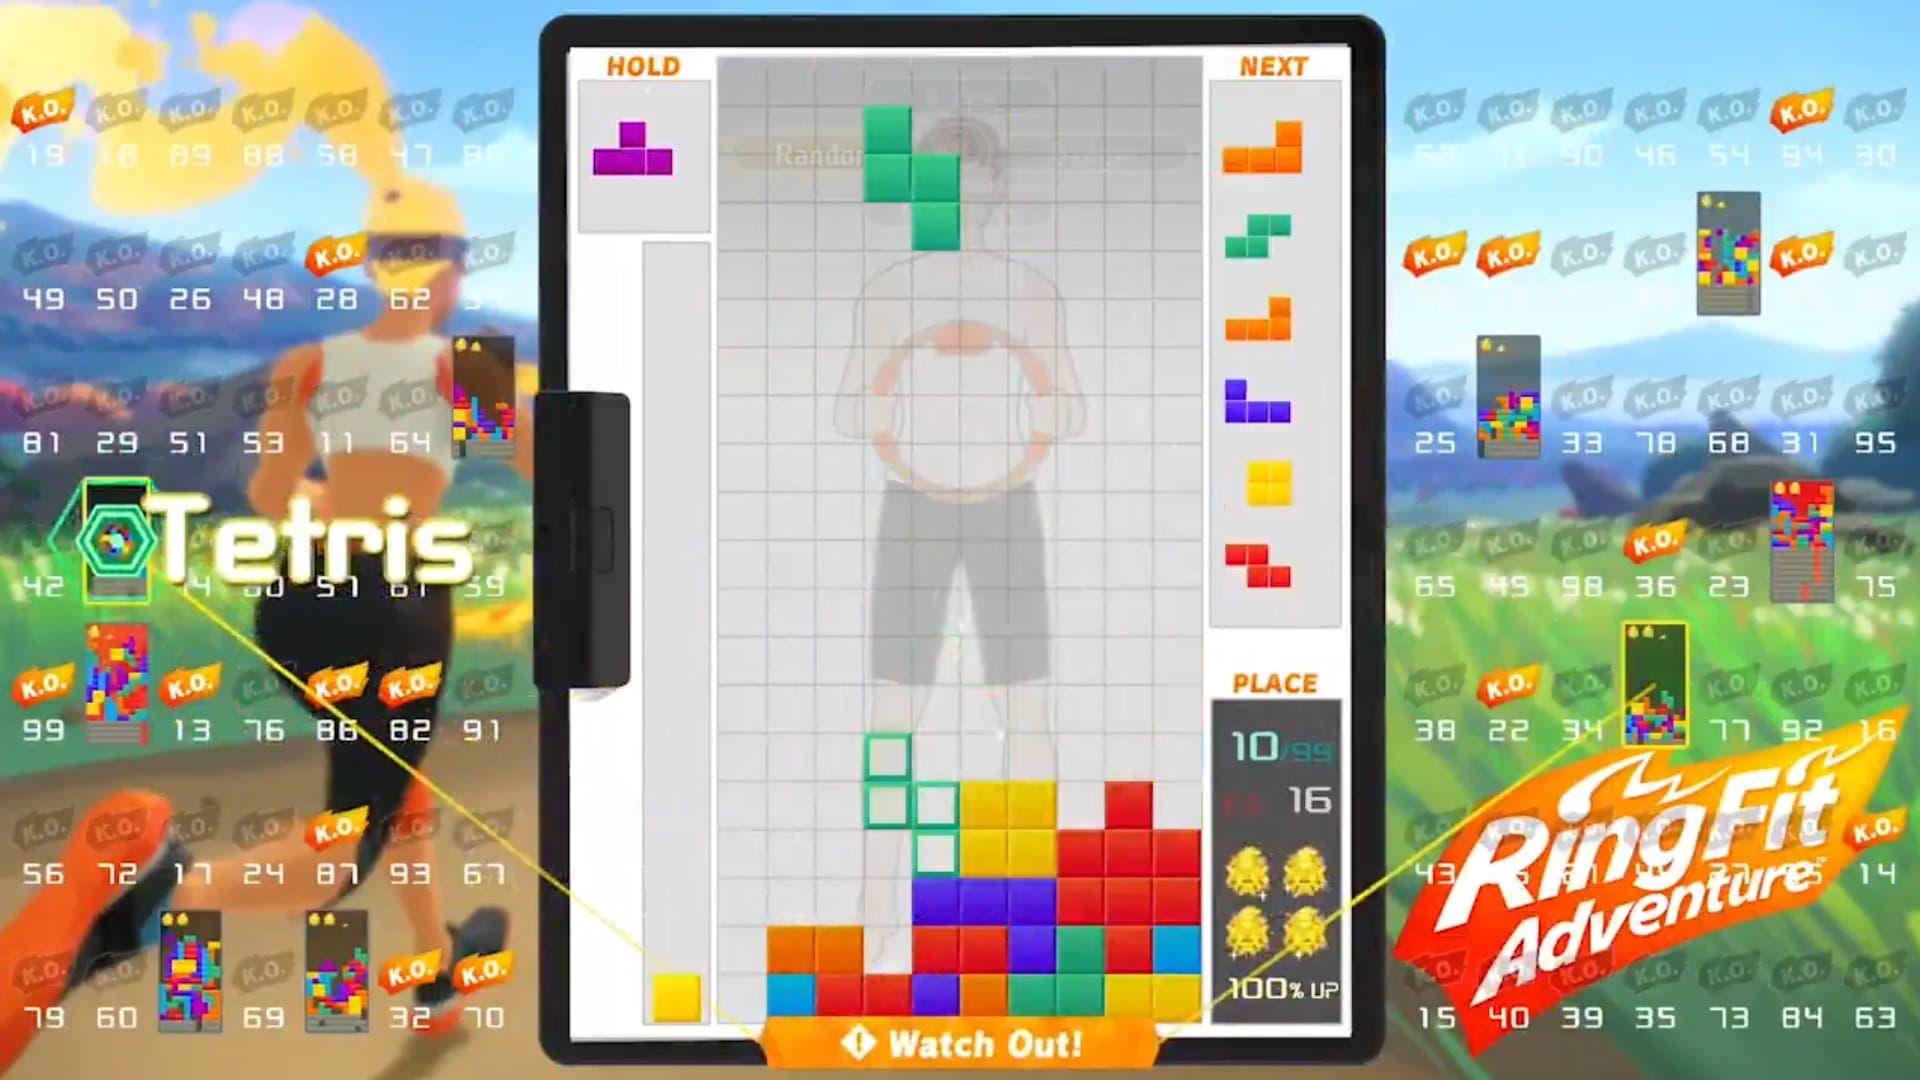 Primer vistazo en vídeo al tema de Ring Fit Adventure en Tetris 99